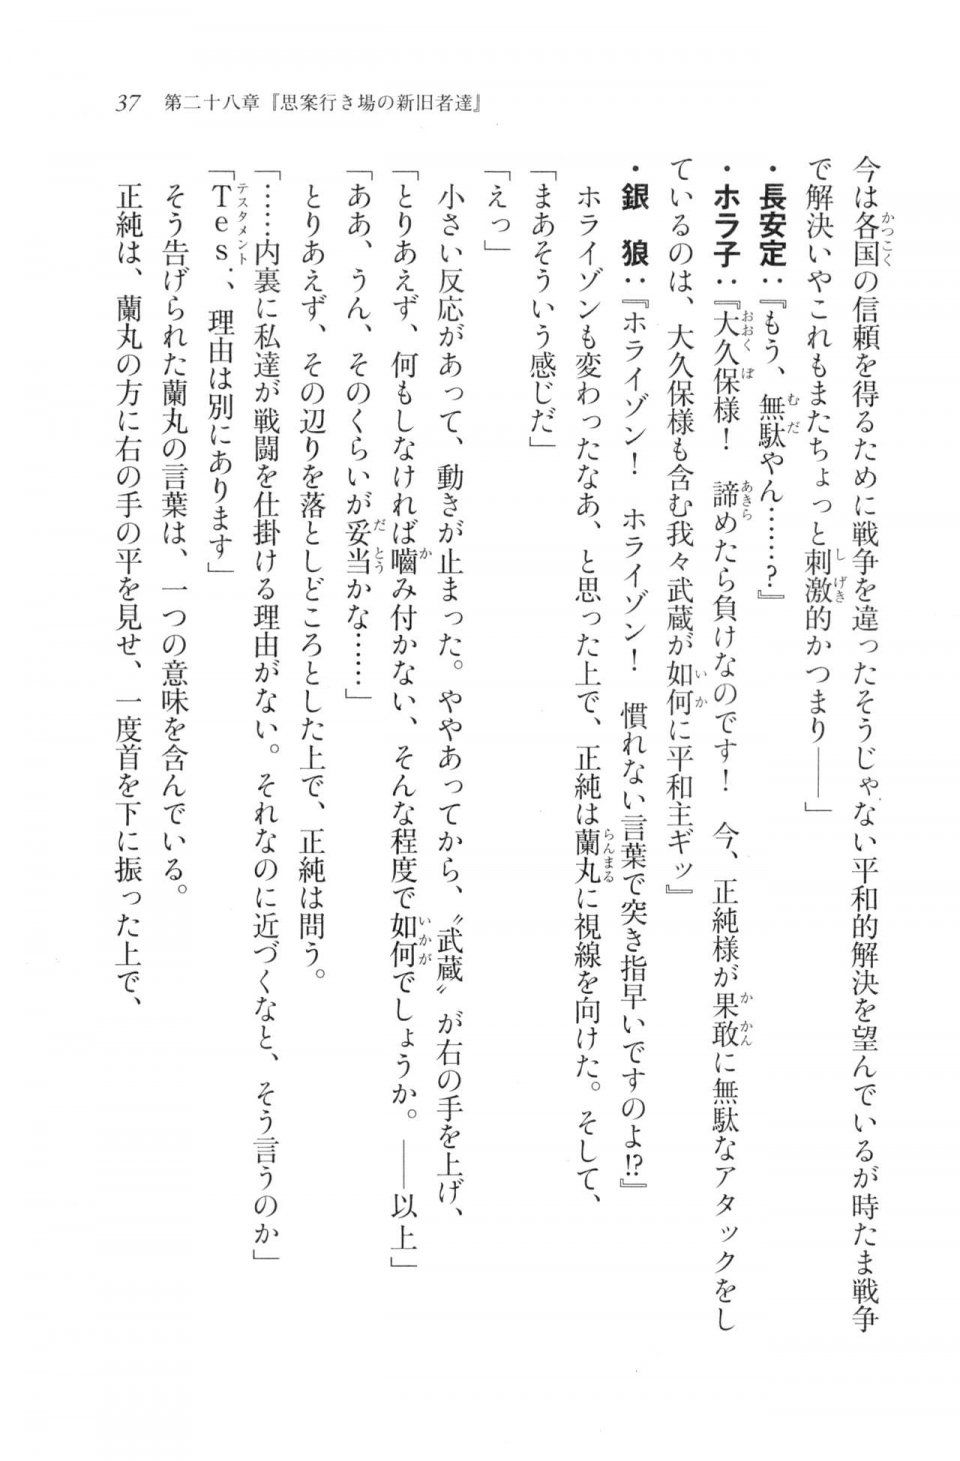 Kyoukai Senjou no Horizon LN Vol 20(8B) - Photo #37